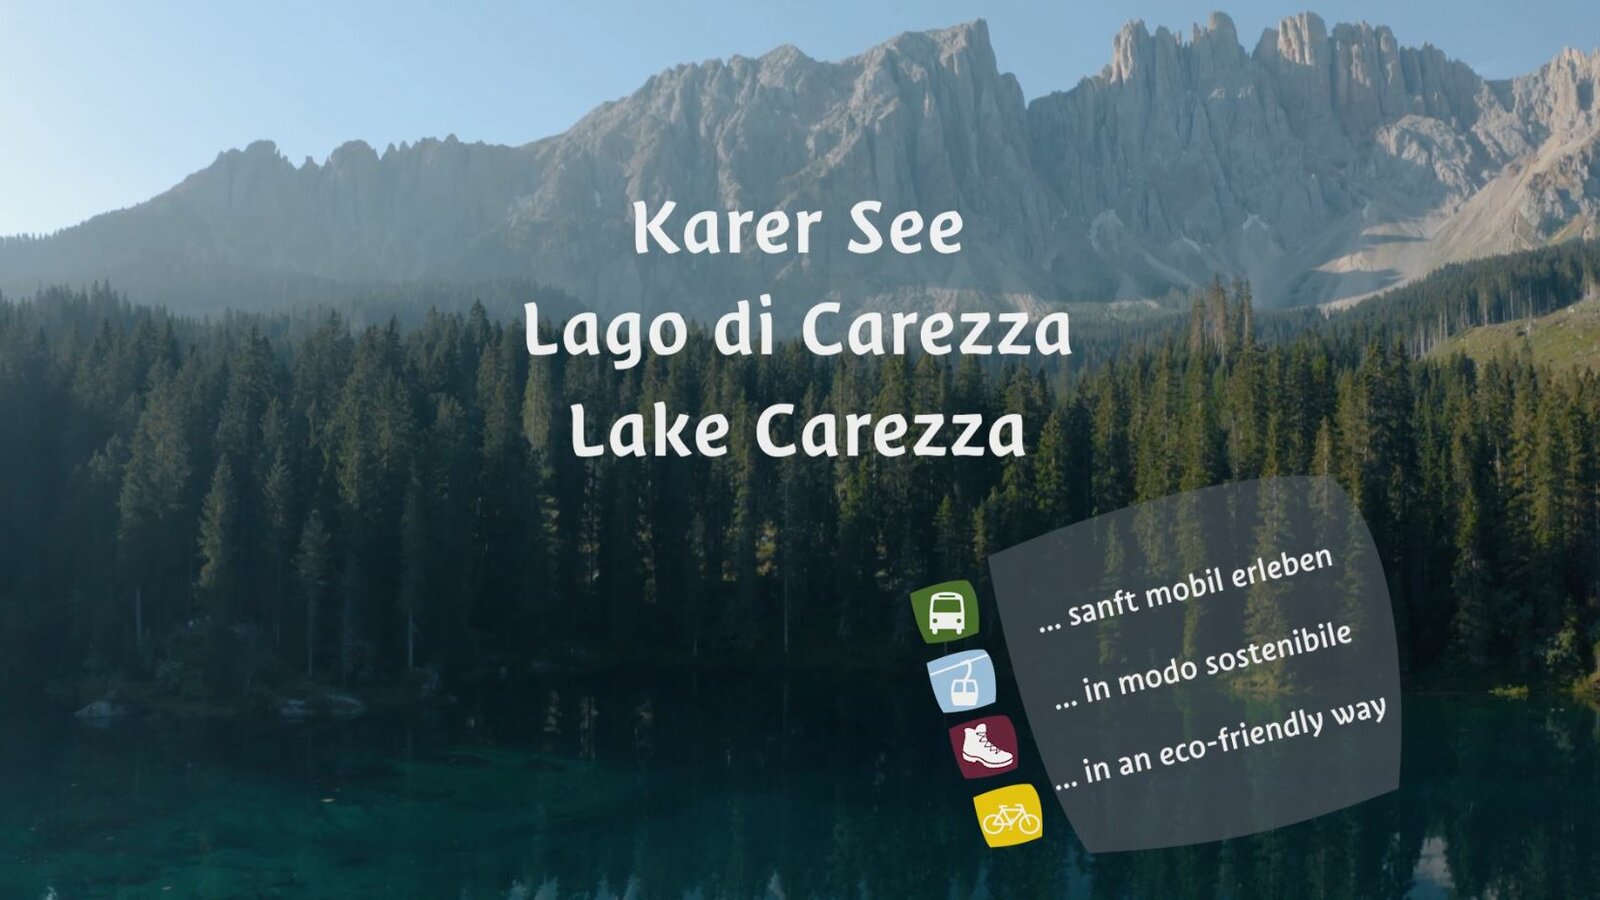 Immagine di copertina video Accessibilità Lago di Carezza senza auto | © Eggental Tourismus